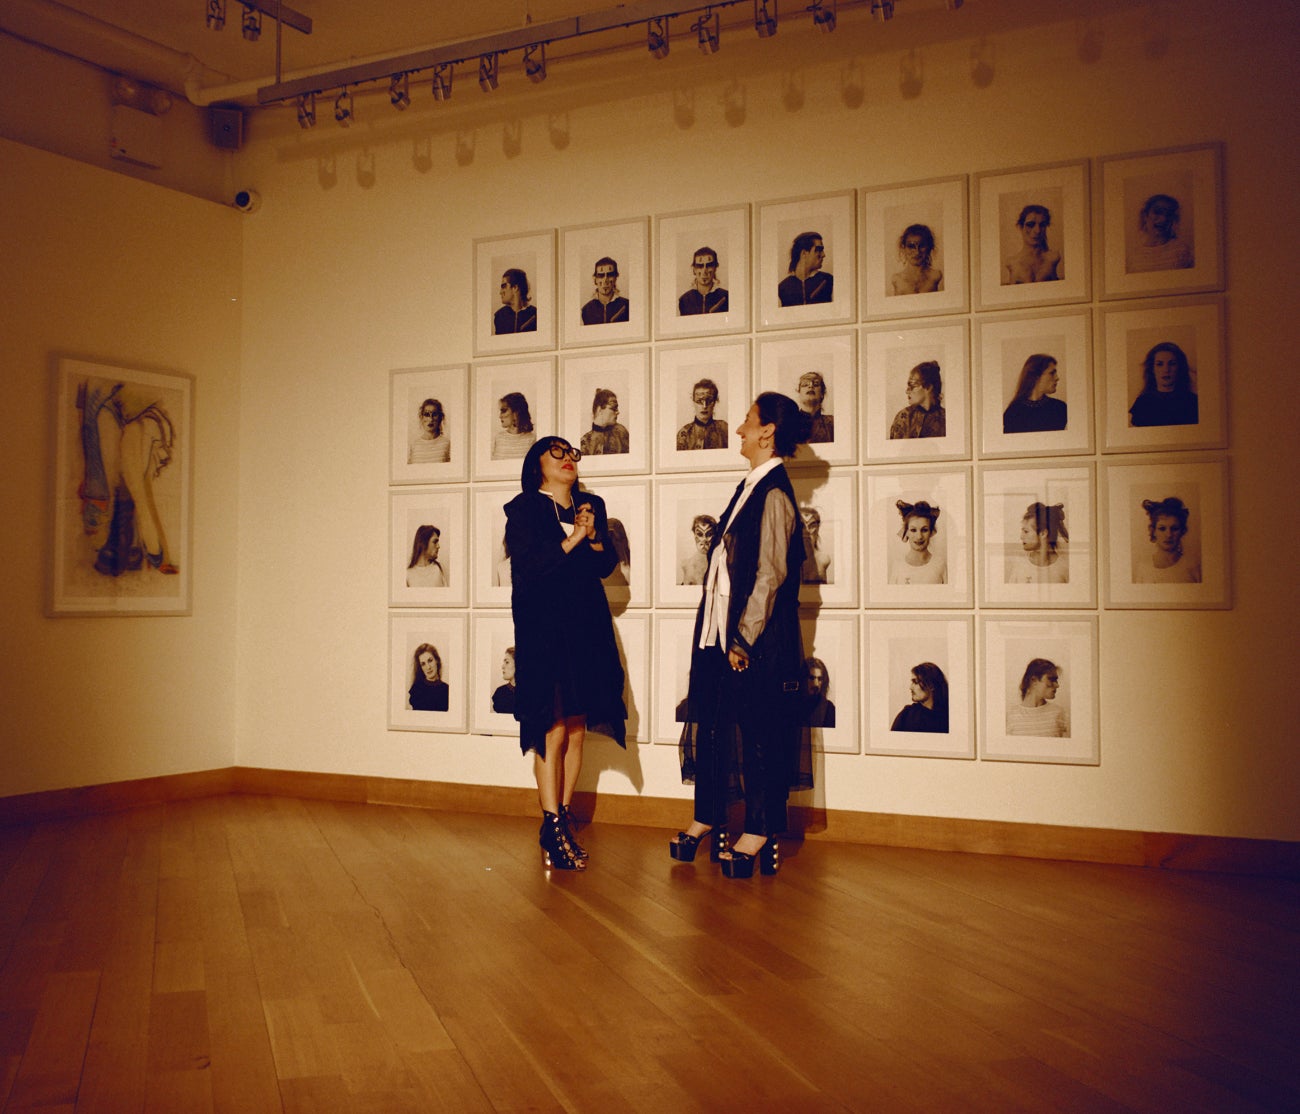 Aimée Chan-Lindquist (links), Leiterin der Abteilung für externe Angelegenheiten des Leslie-Lohman Museums, und die Geschäftsführerin Alyssa Nitchun stehen gemeinsam im Museum vor Lorenza Böttners 30 Porträts umfassenden Installation „Face Art“ aus dem Jahr 1983.